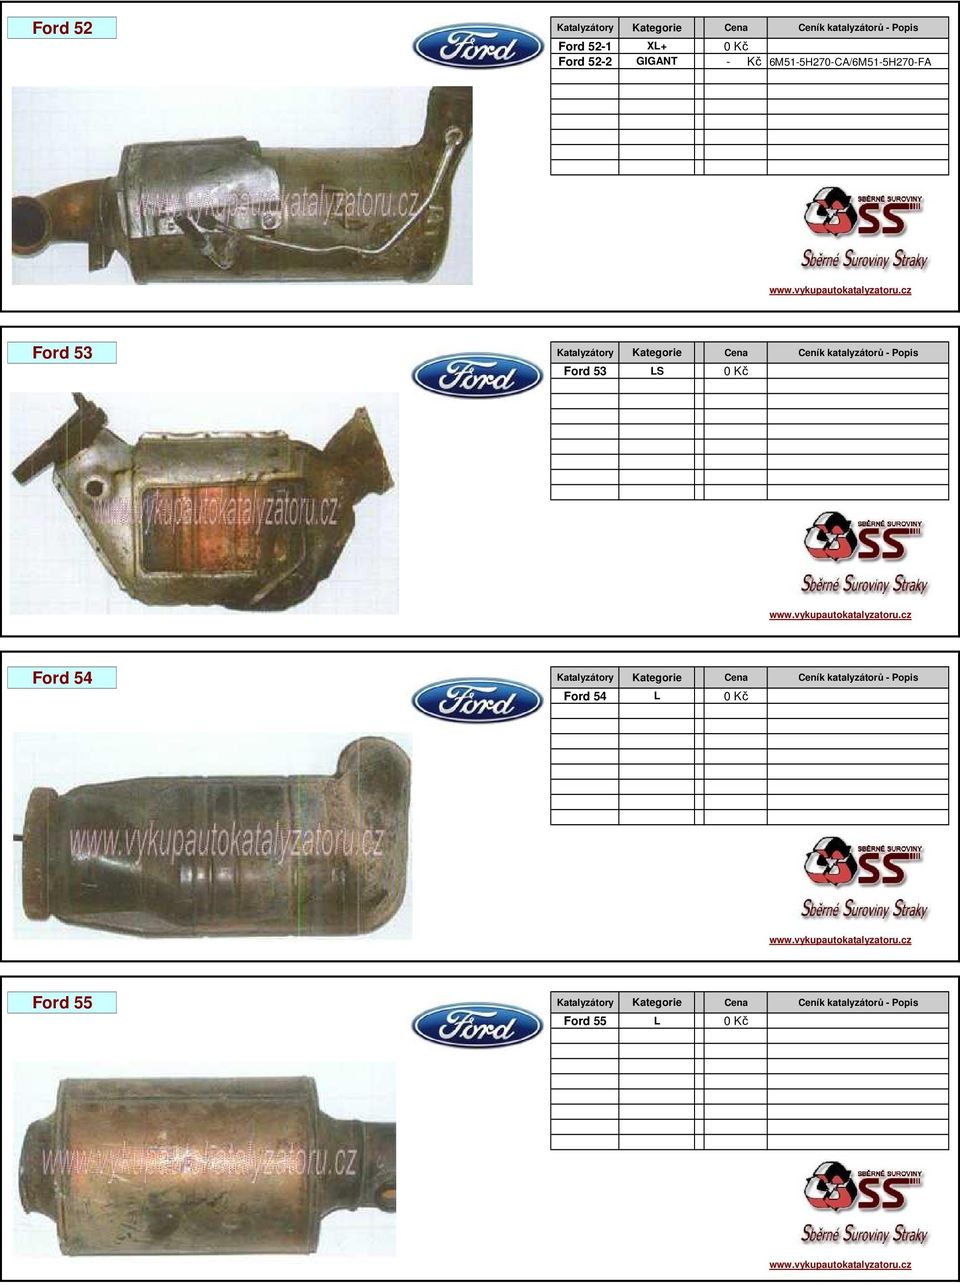 katalyzátorů - Popis Ford 53 LS 0 Kč Ford 54 Katalyzátory Kategorie Cena Ceník katalyzátorů